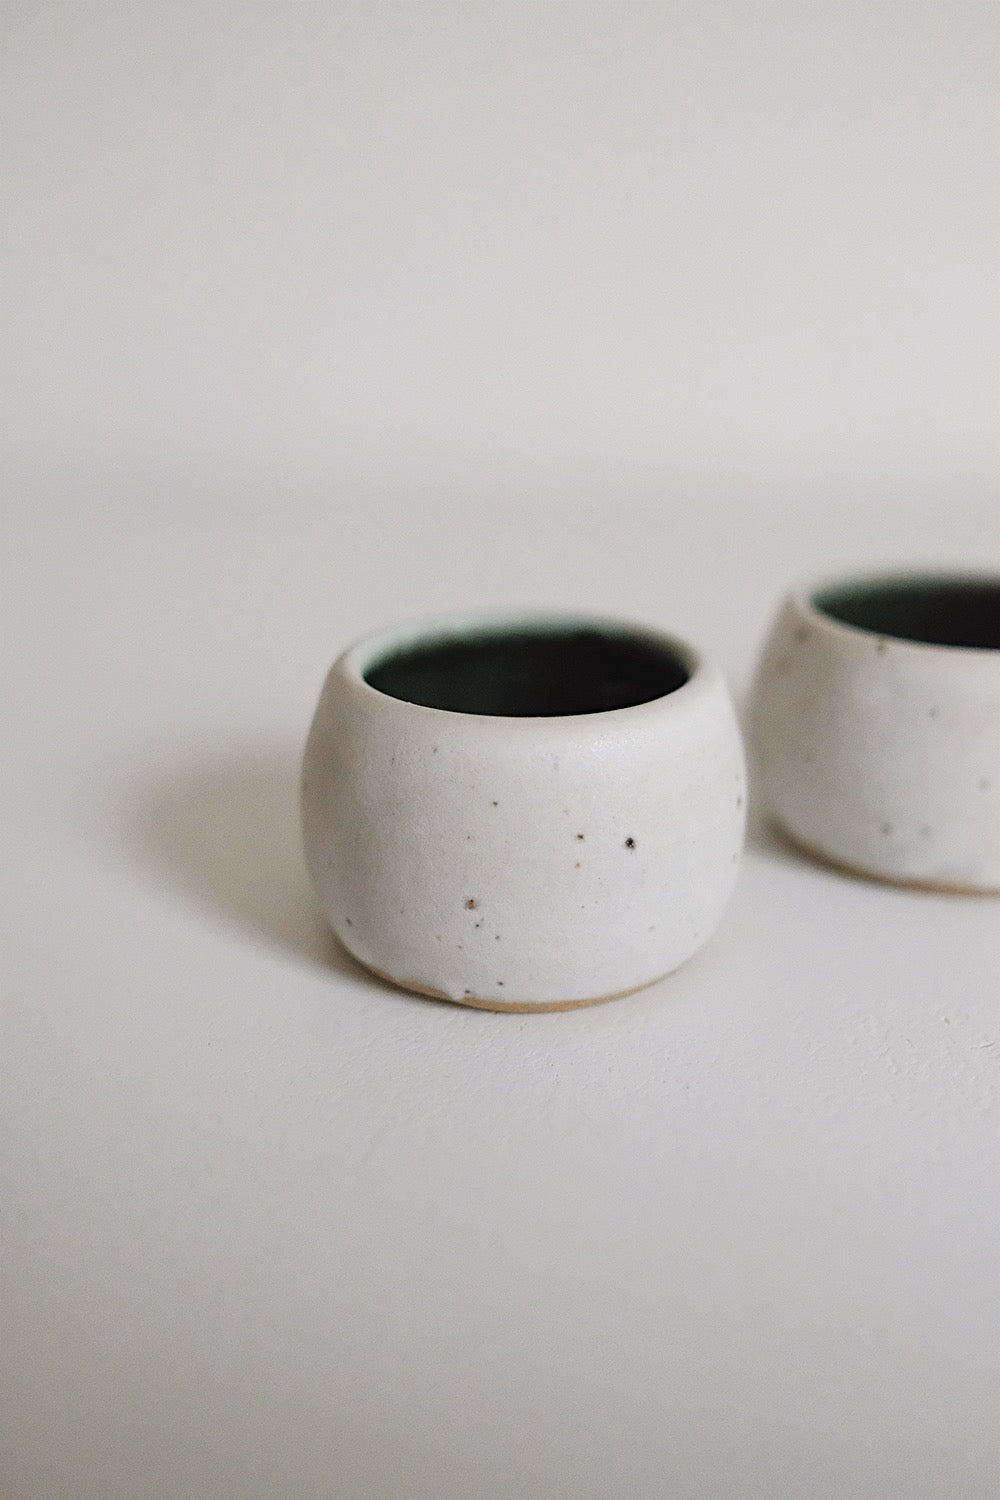 sake cups - set of 2